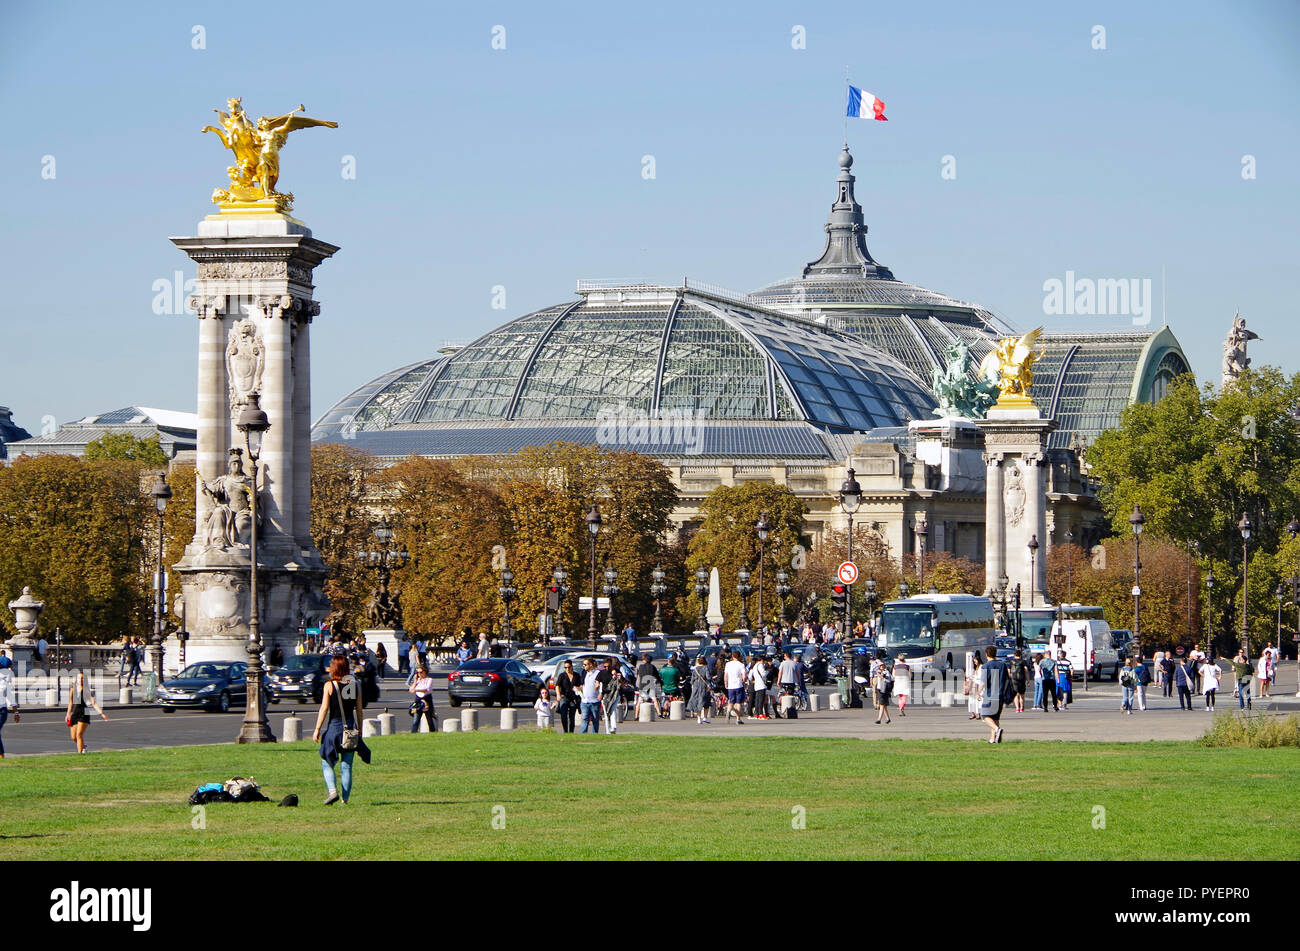 París, Francia. El Grand Palais, el Petit Palais y el puente Alejandro III, establecidas en un plan formal formado en el sitio de la Exposición Universal. Foto de stock